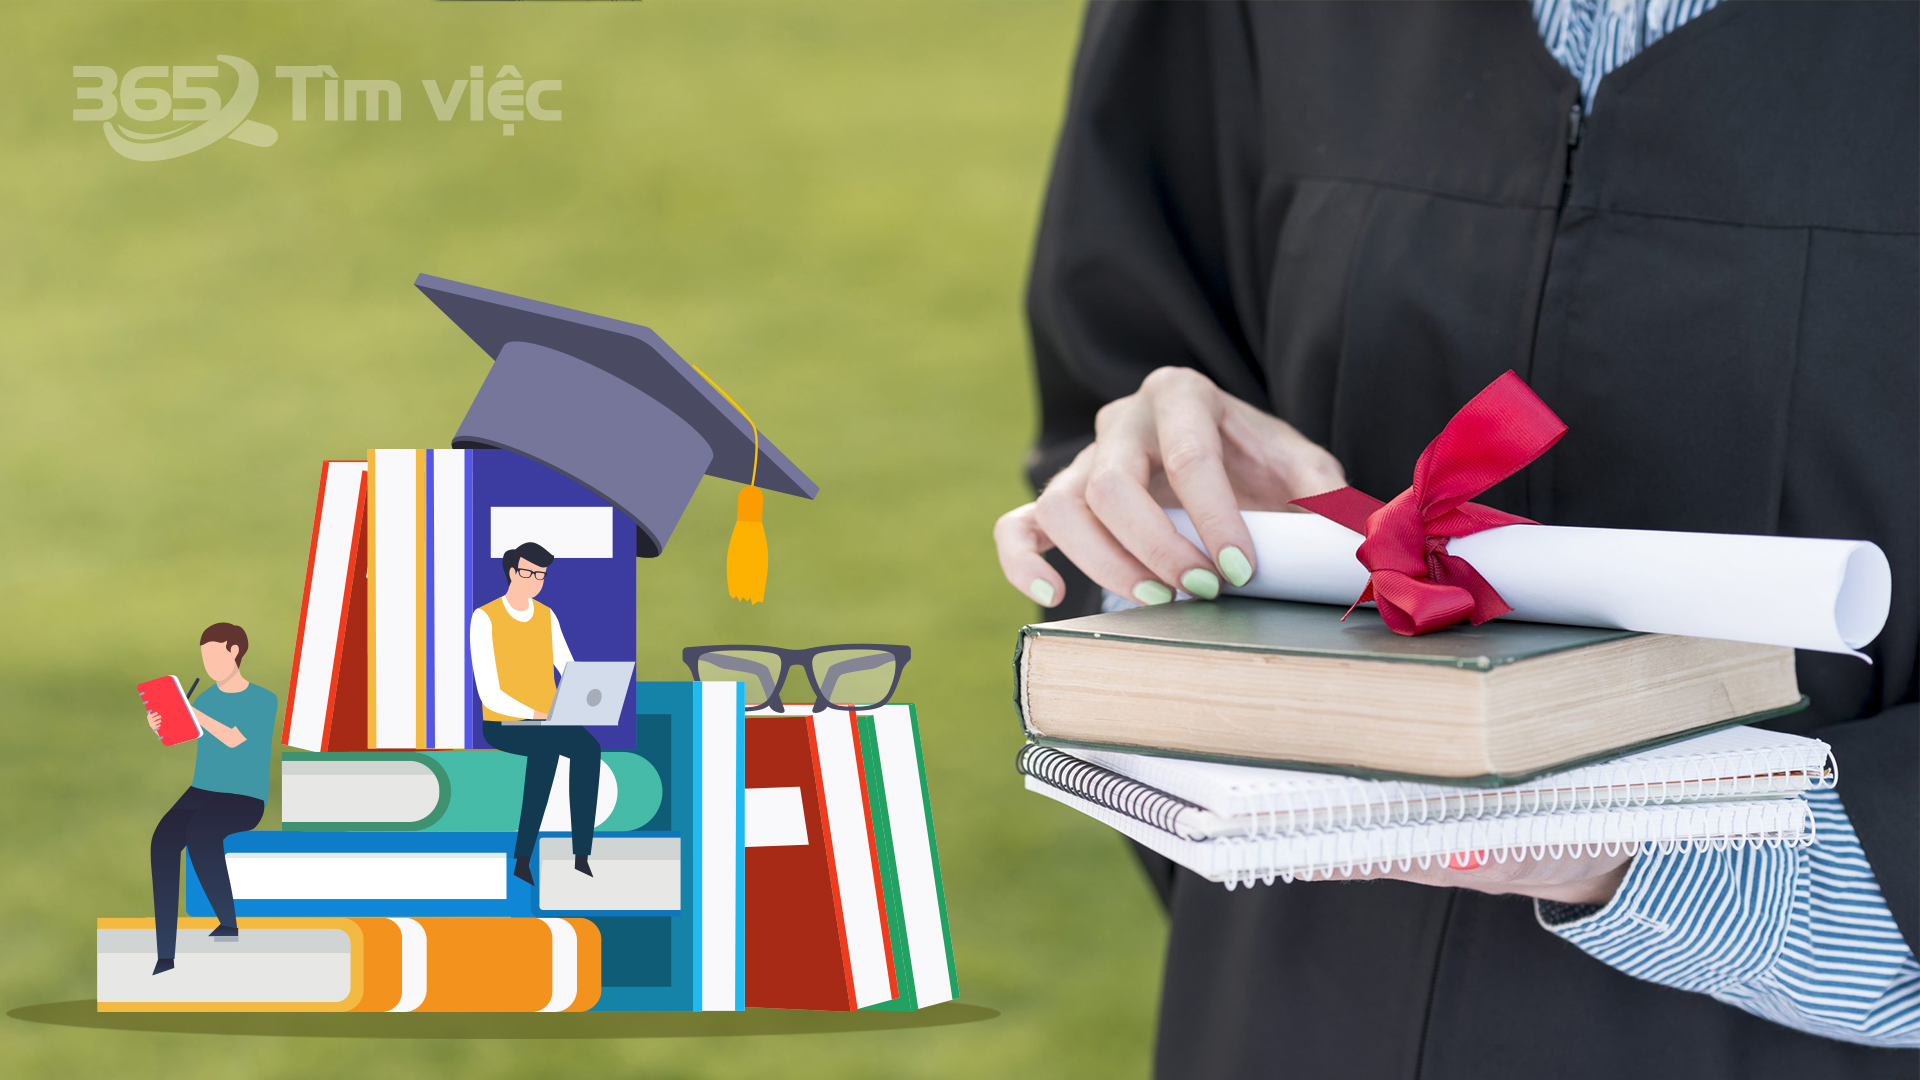 Tại Úc định nghĩa Graduate Certificate là gì?